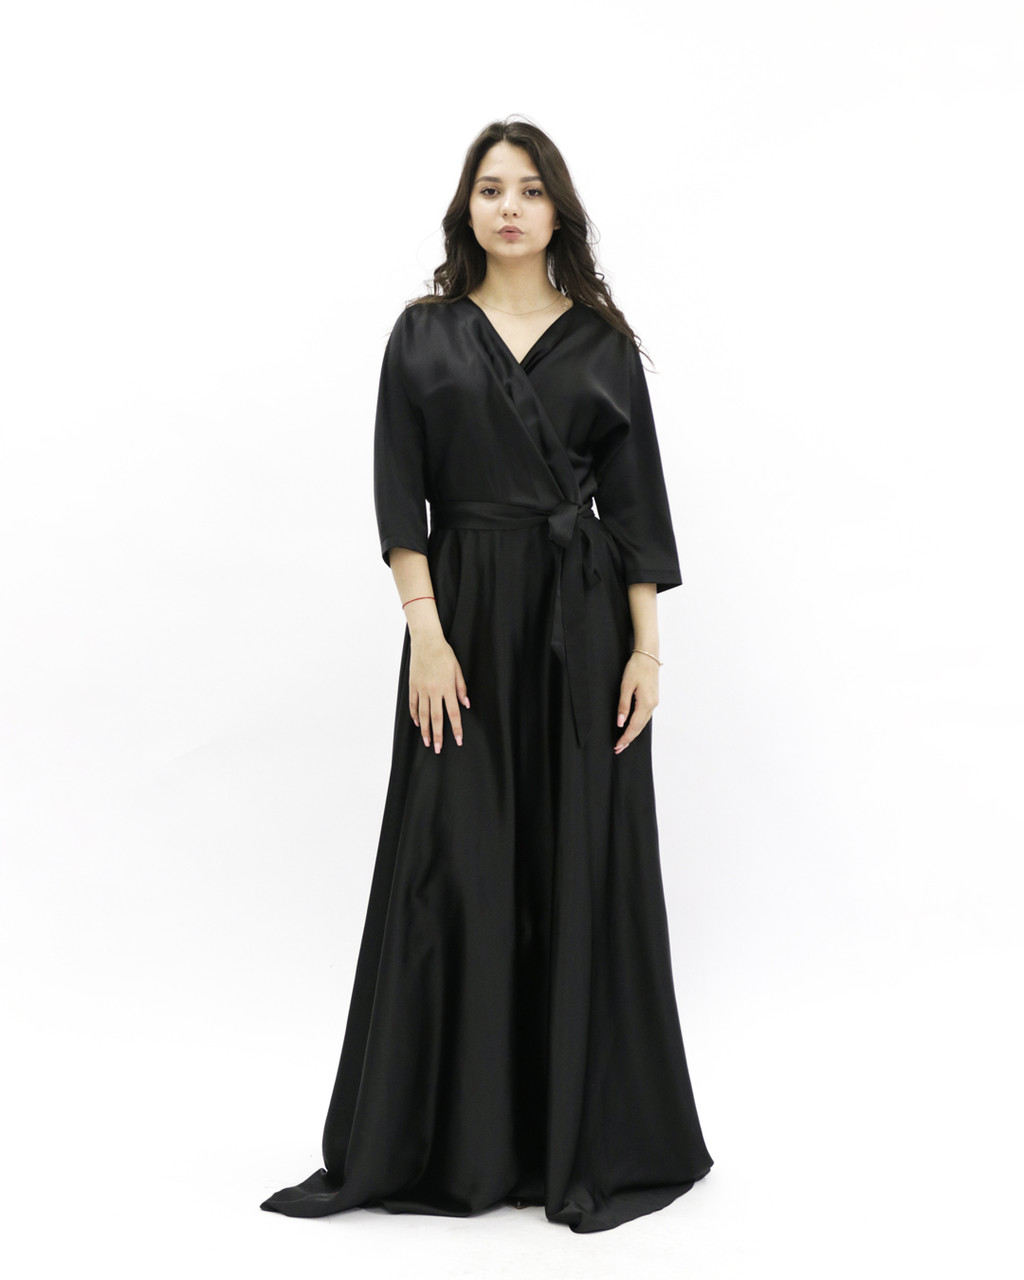 Вечернее платье «UM&H 46147042» черное, фото 1